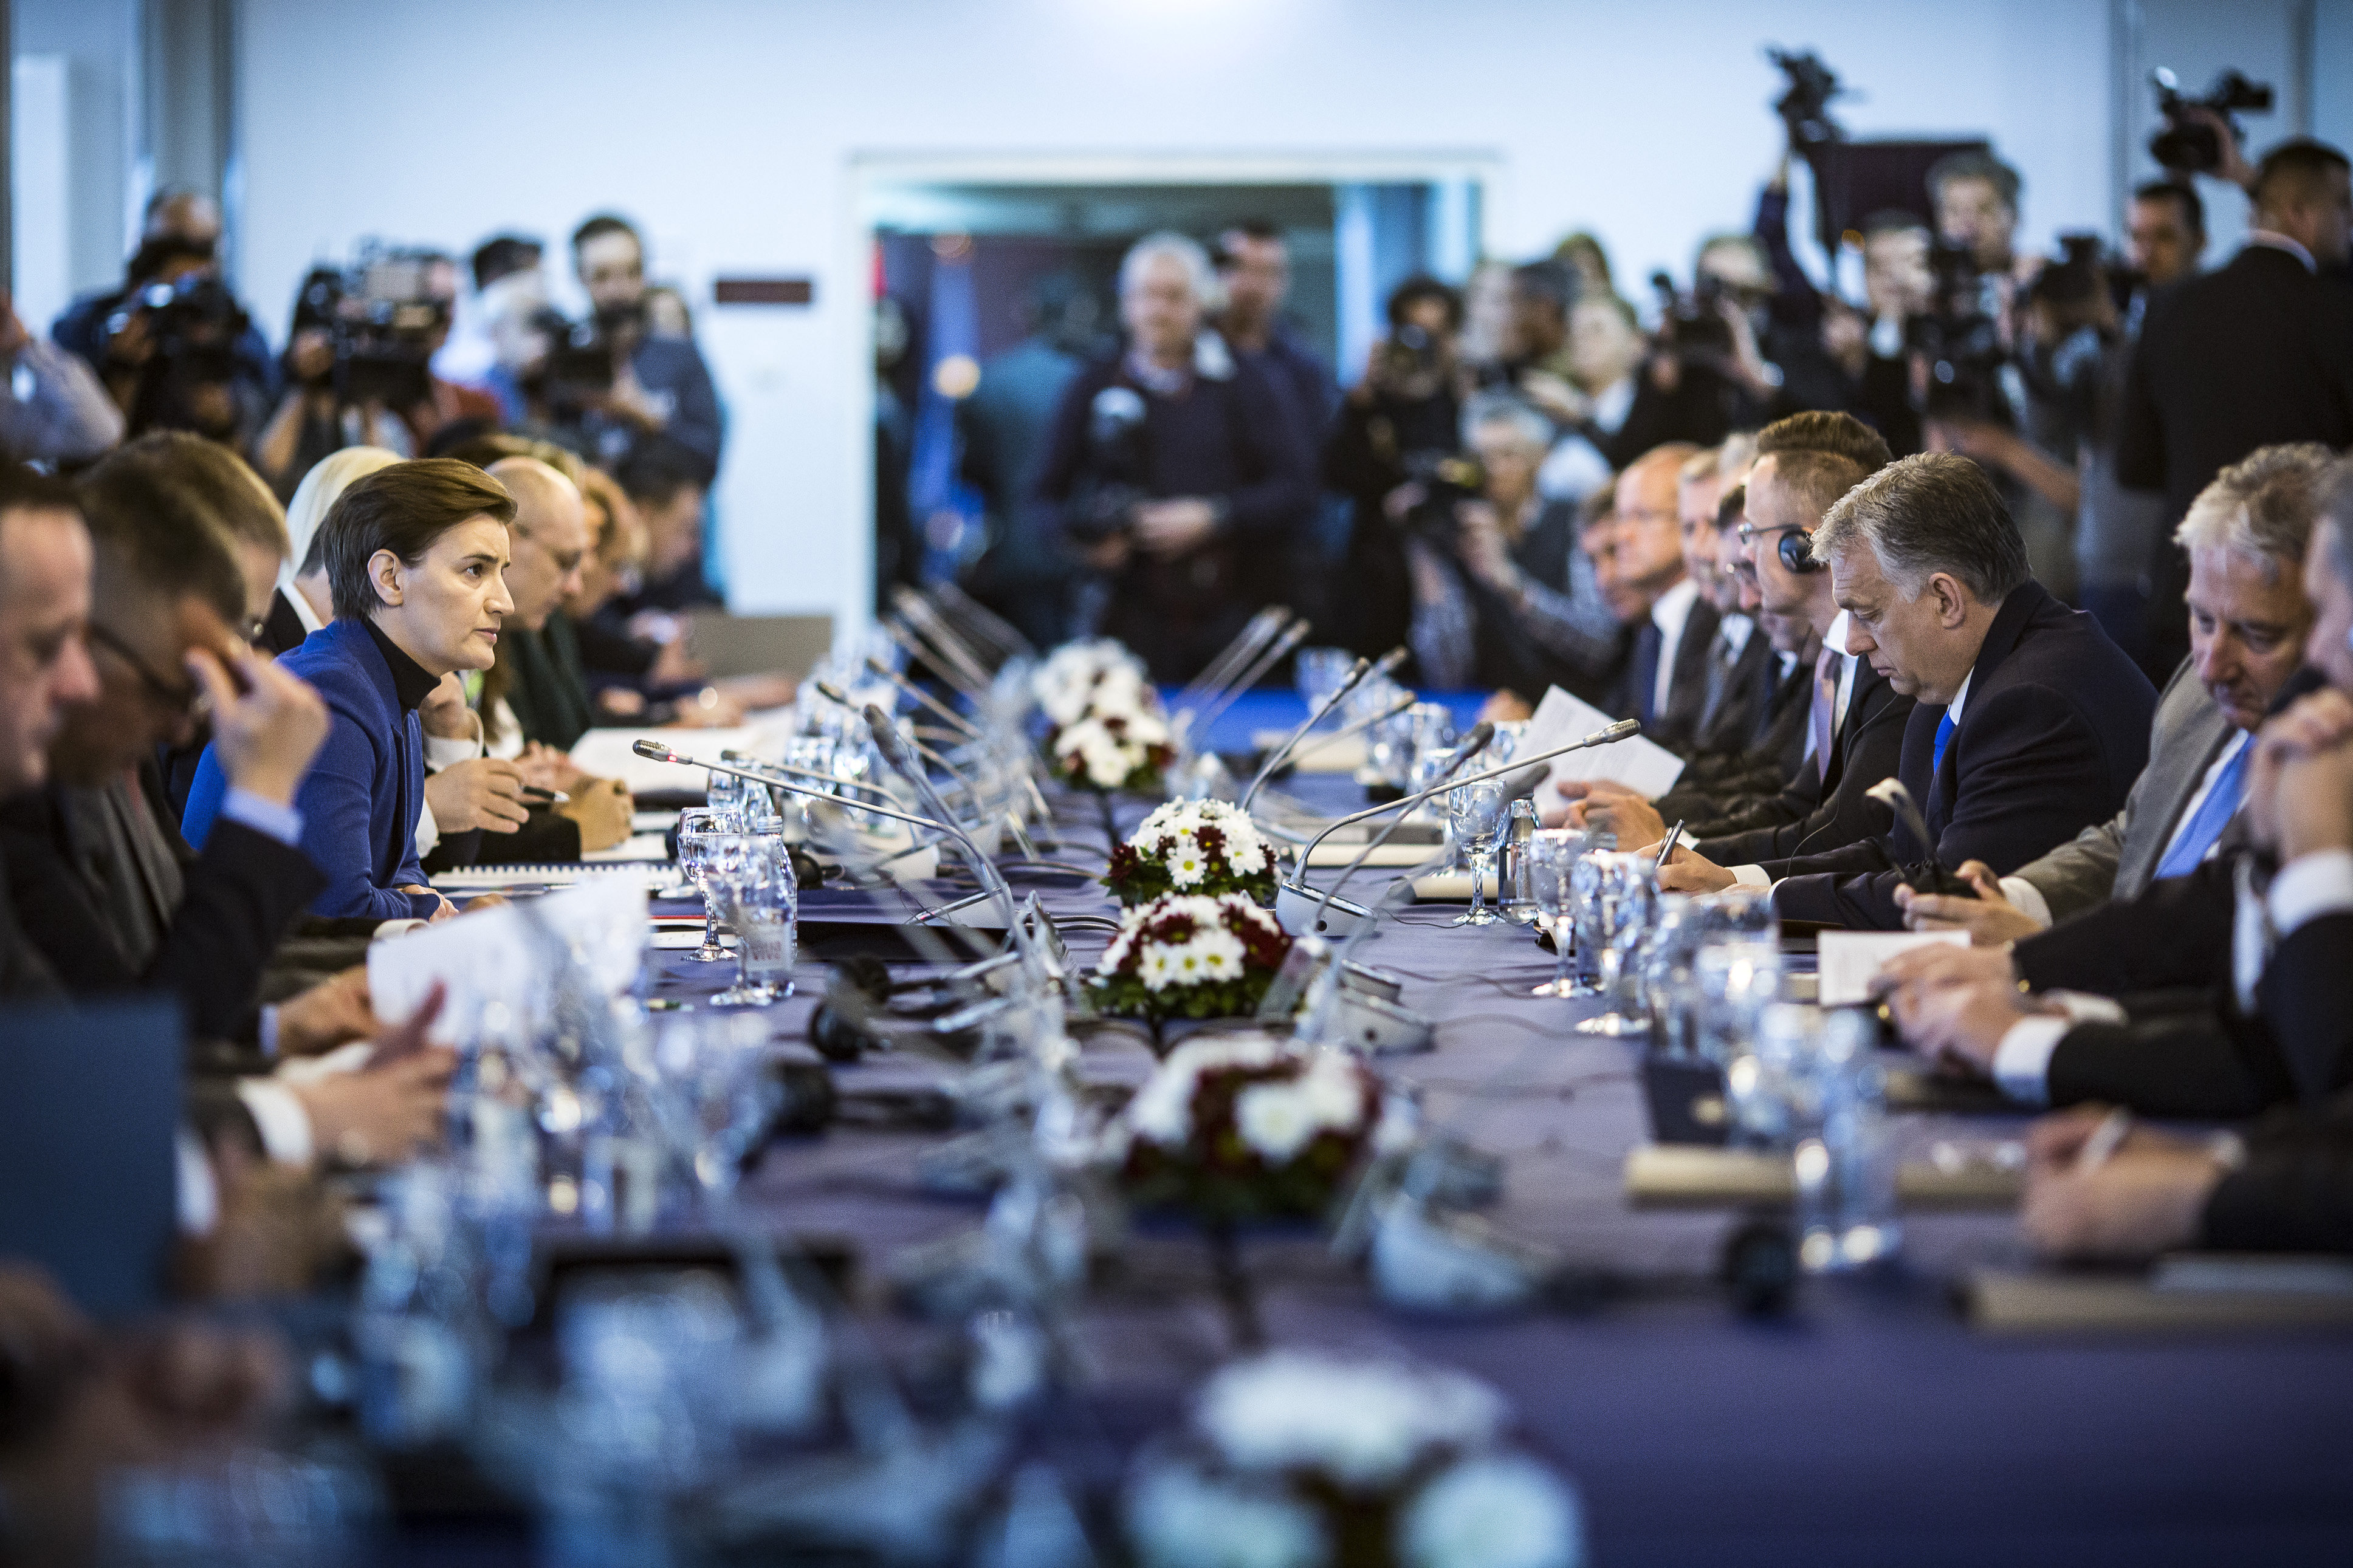 塞尔维亚和匈牙利政府联席会议在塞尔维亚举行